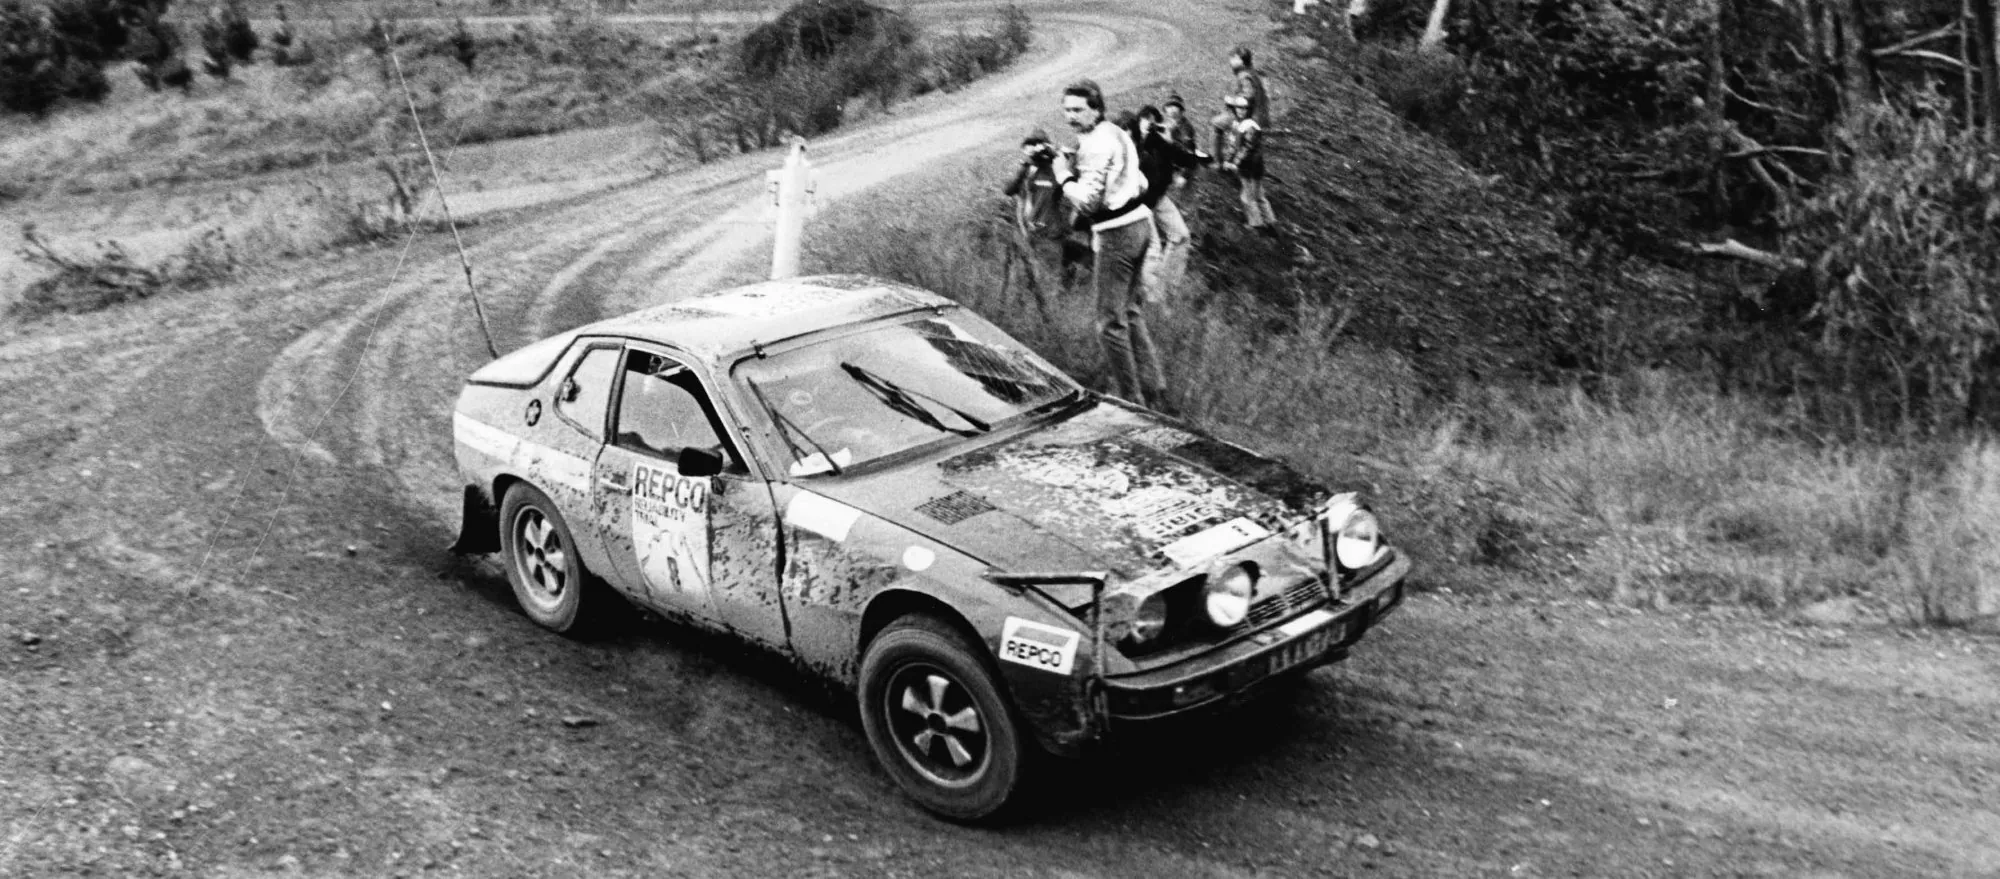 Jürgen Barth: Klassensieger und Achter Gesamt bei der Repco Rallye in Australien 1979 mit dem Porsche 924